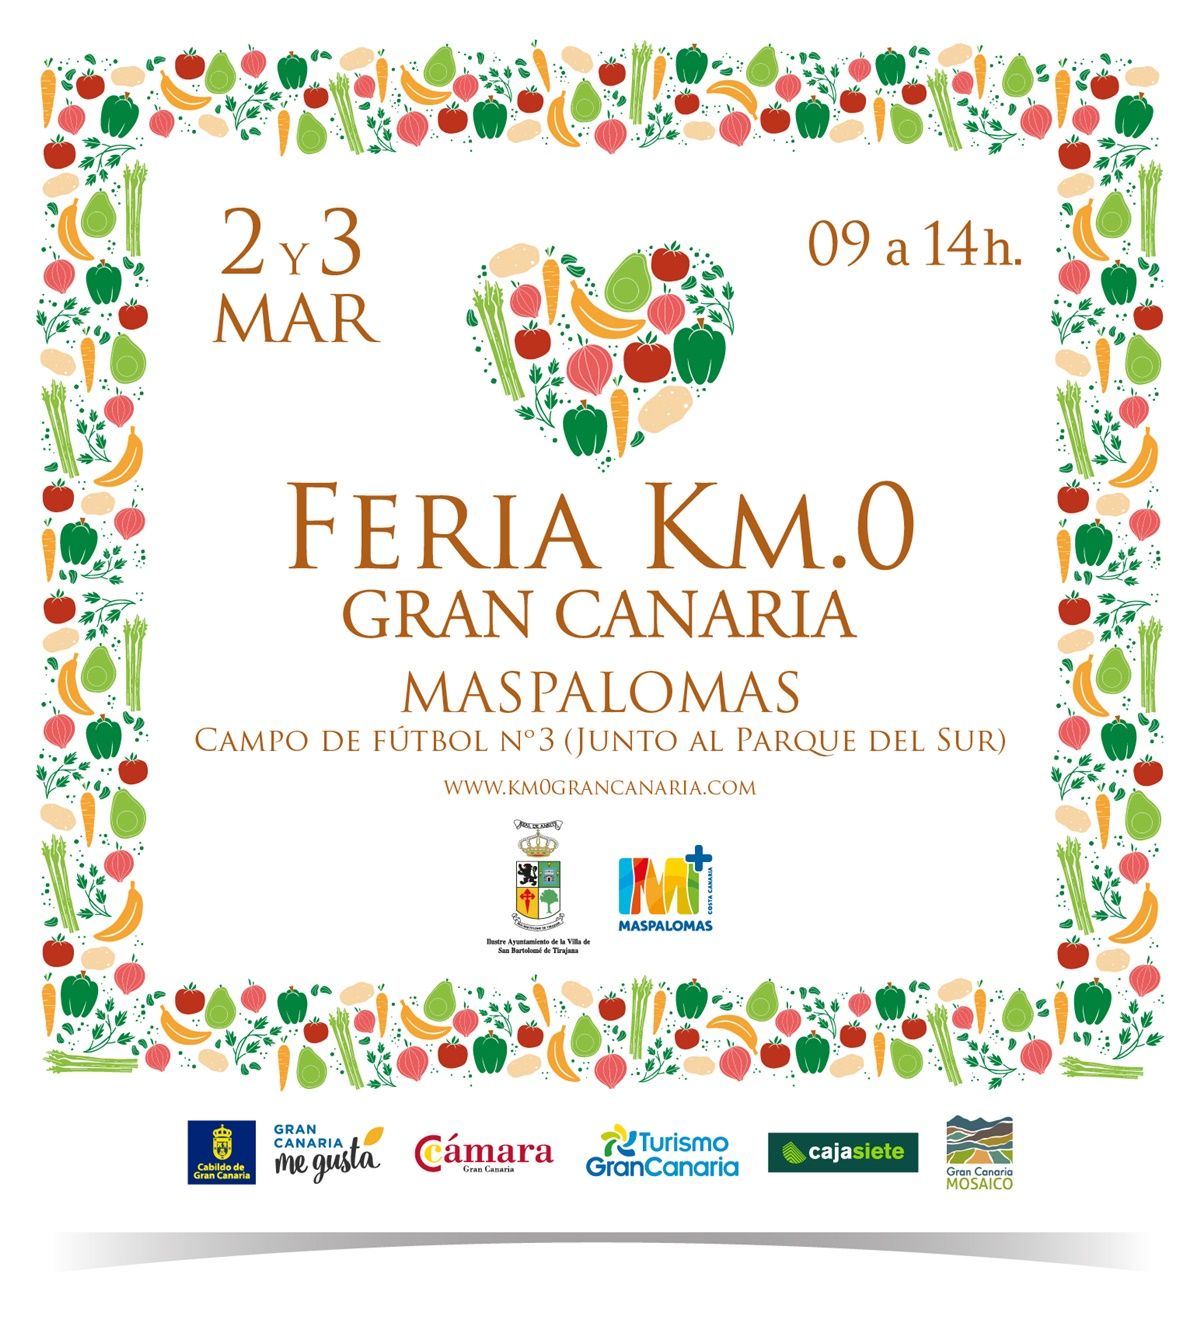 Feria Km.0 Gran Canaria - Maspalomas